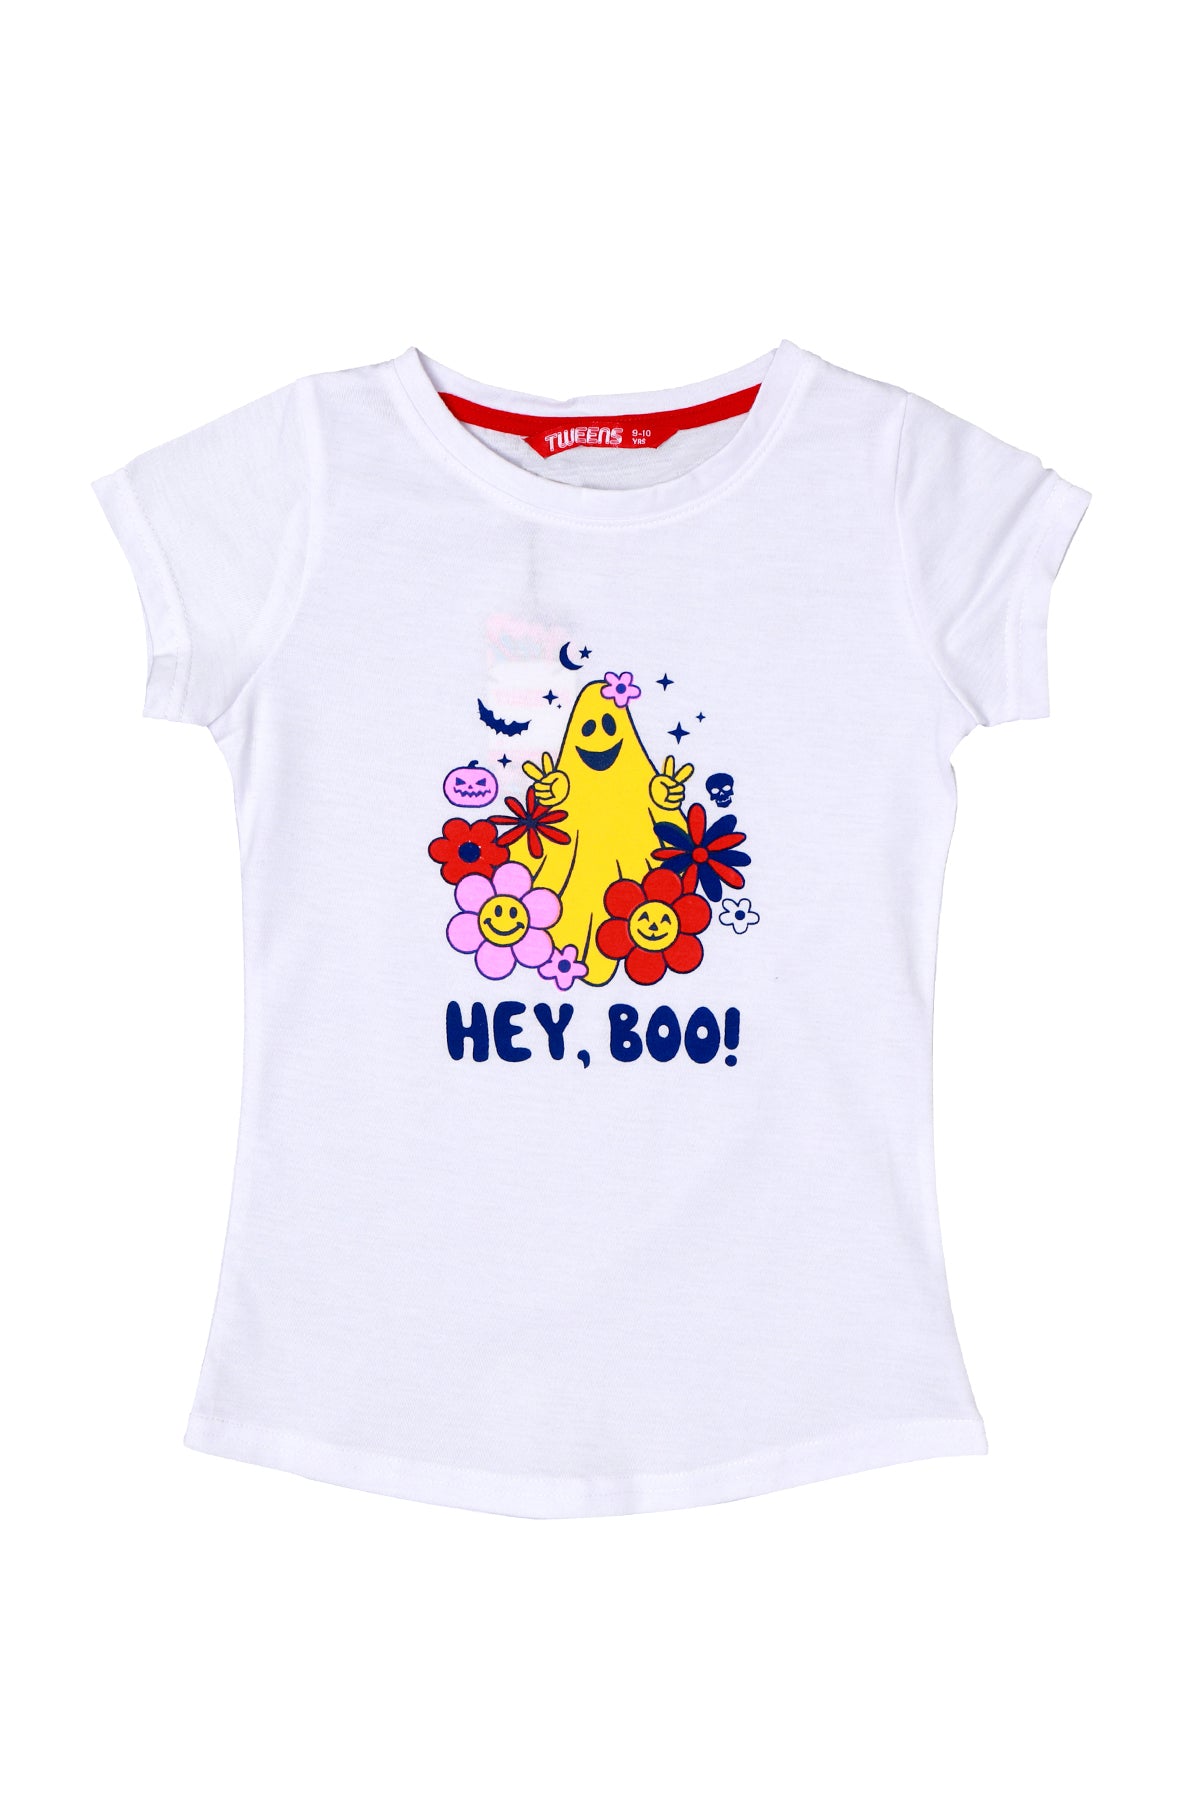 Tween Girl Kids Girl Casual T - Shirt (7915061543136)